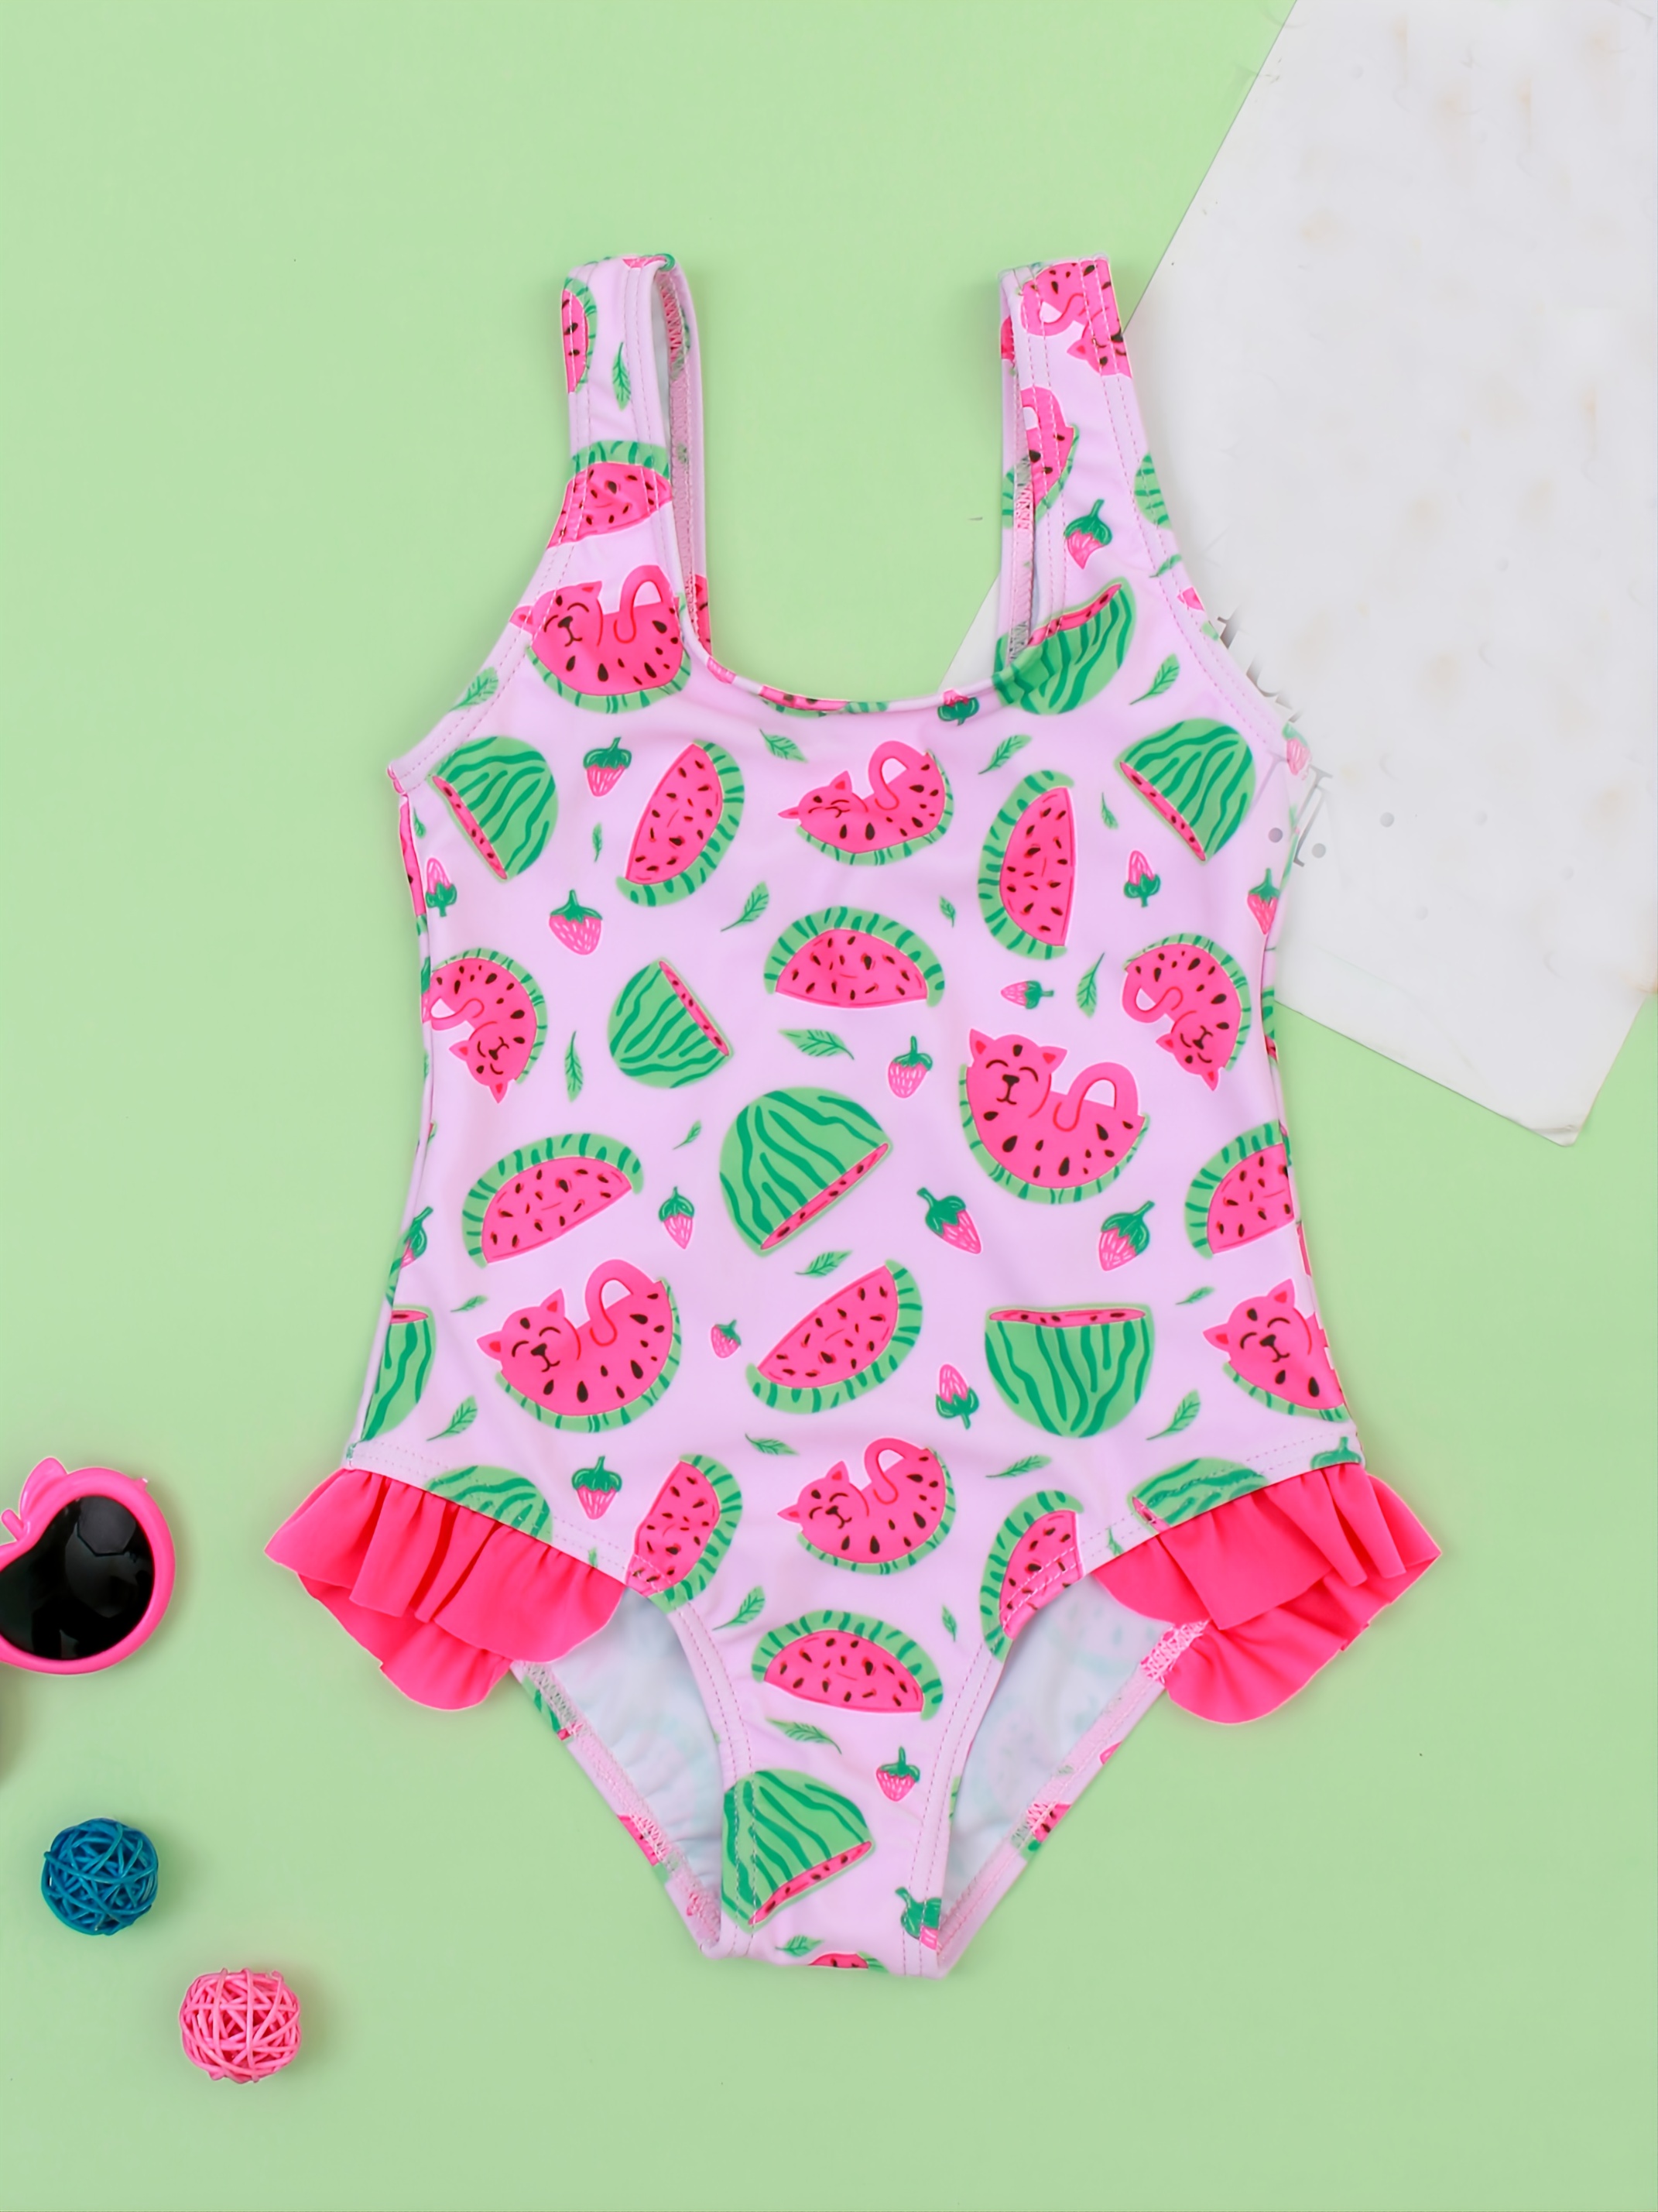 Baby Girl One Piece Swimsuit Swimwear Watermelon Bathing Suit | Shop On ...